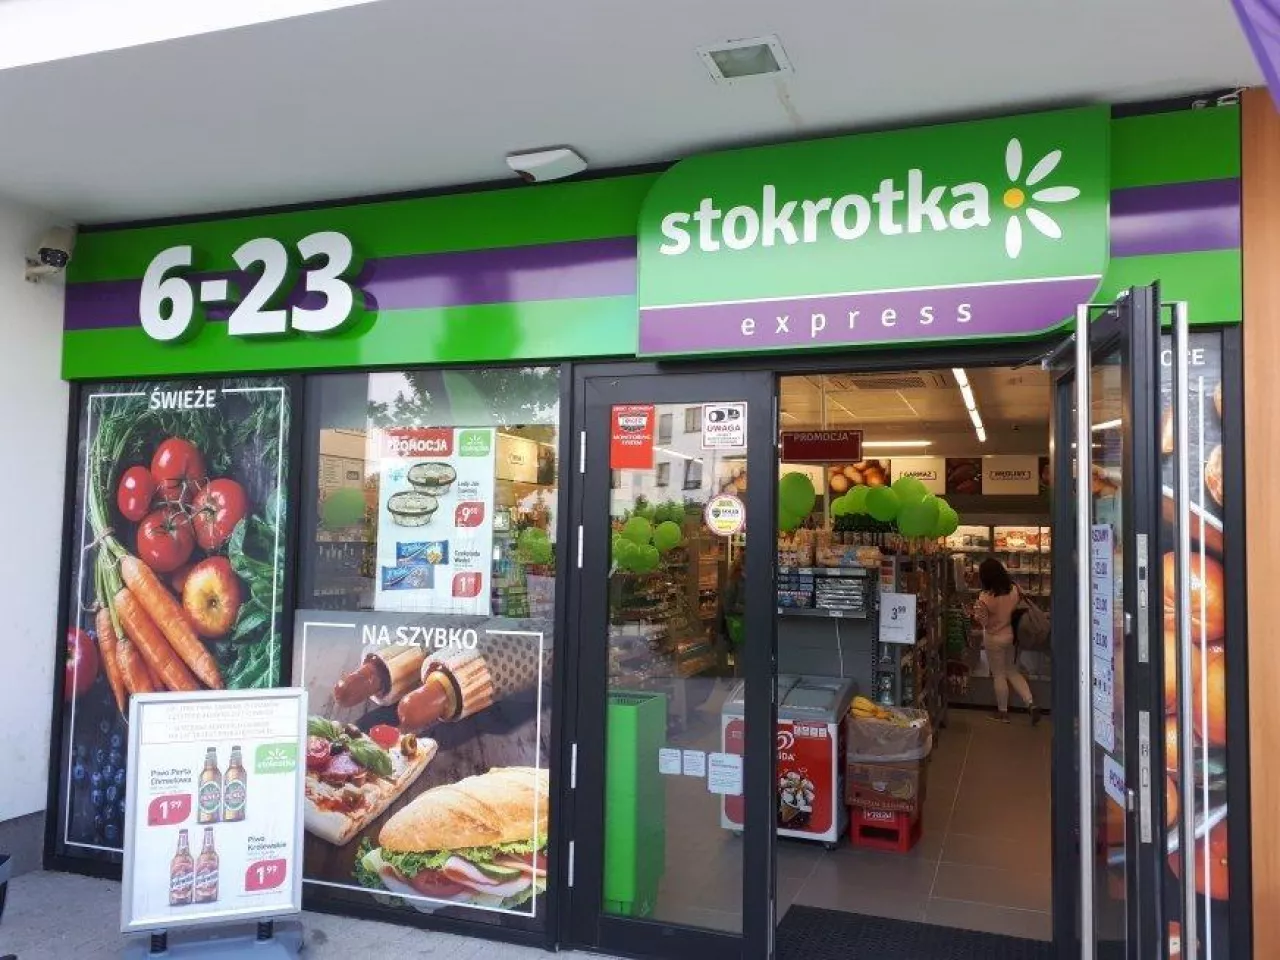 Supermarket sieci Stokrotka w Warszawie (materiały własne)